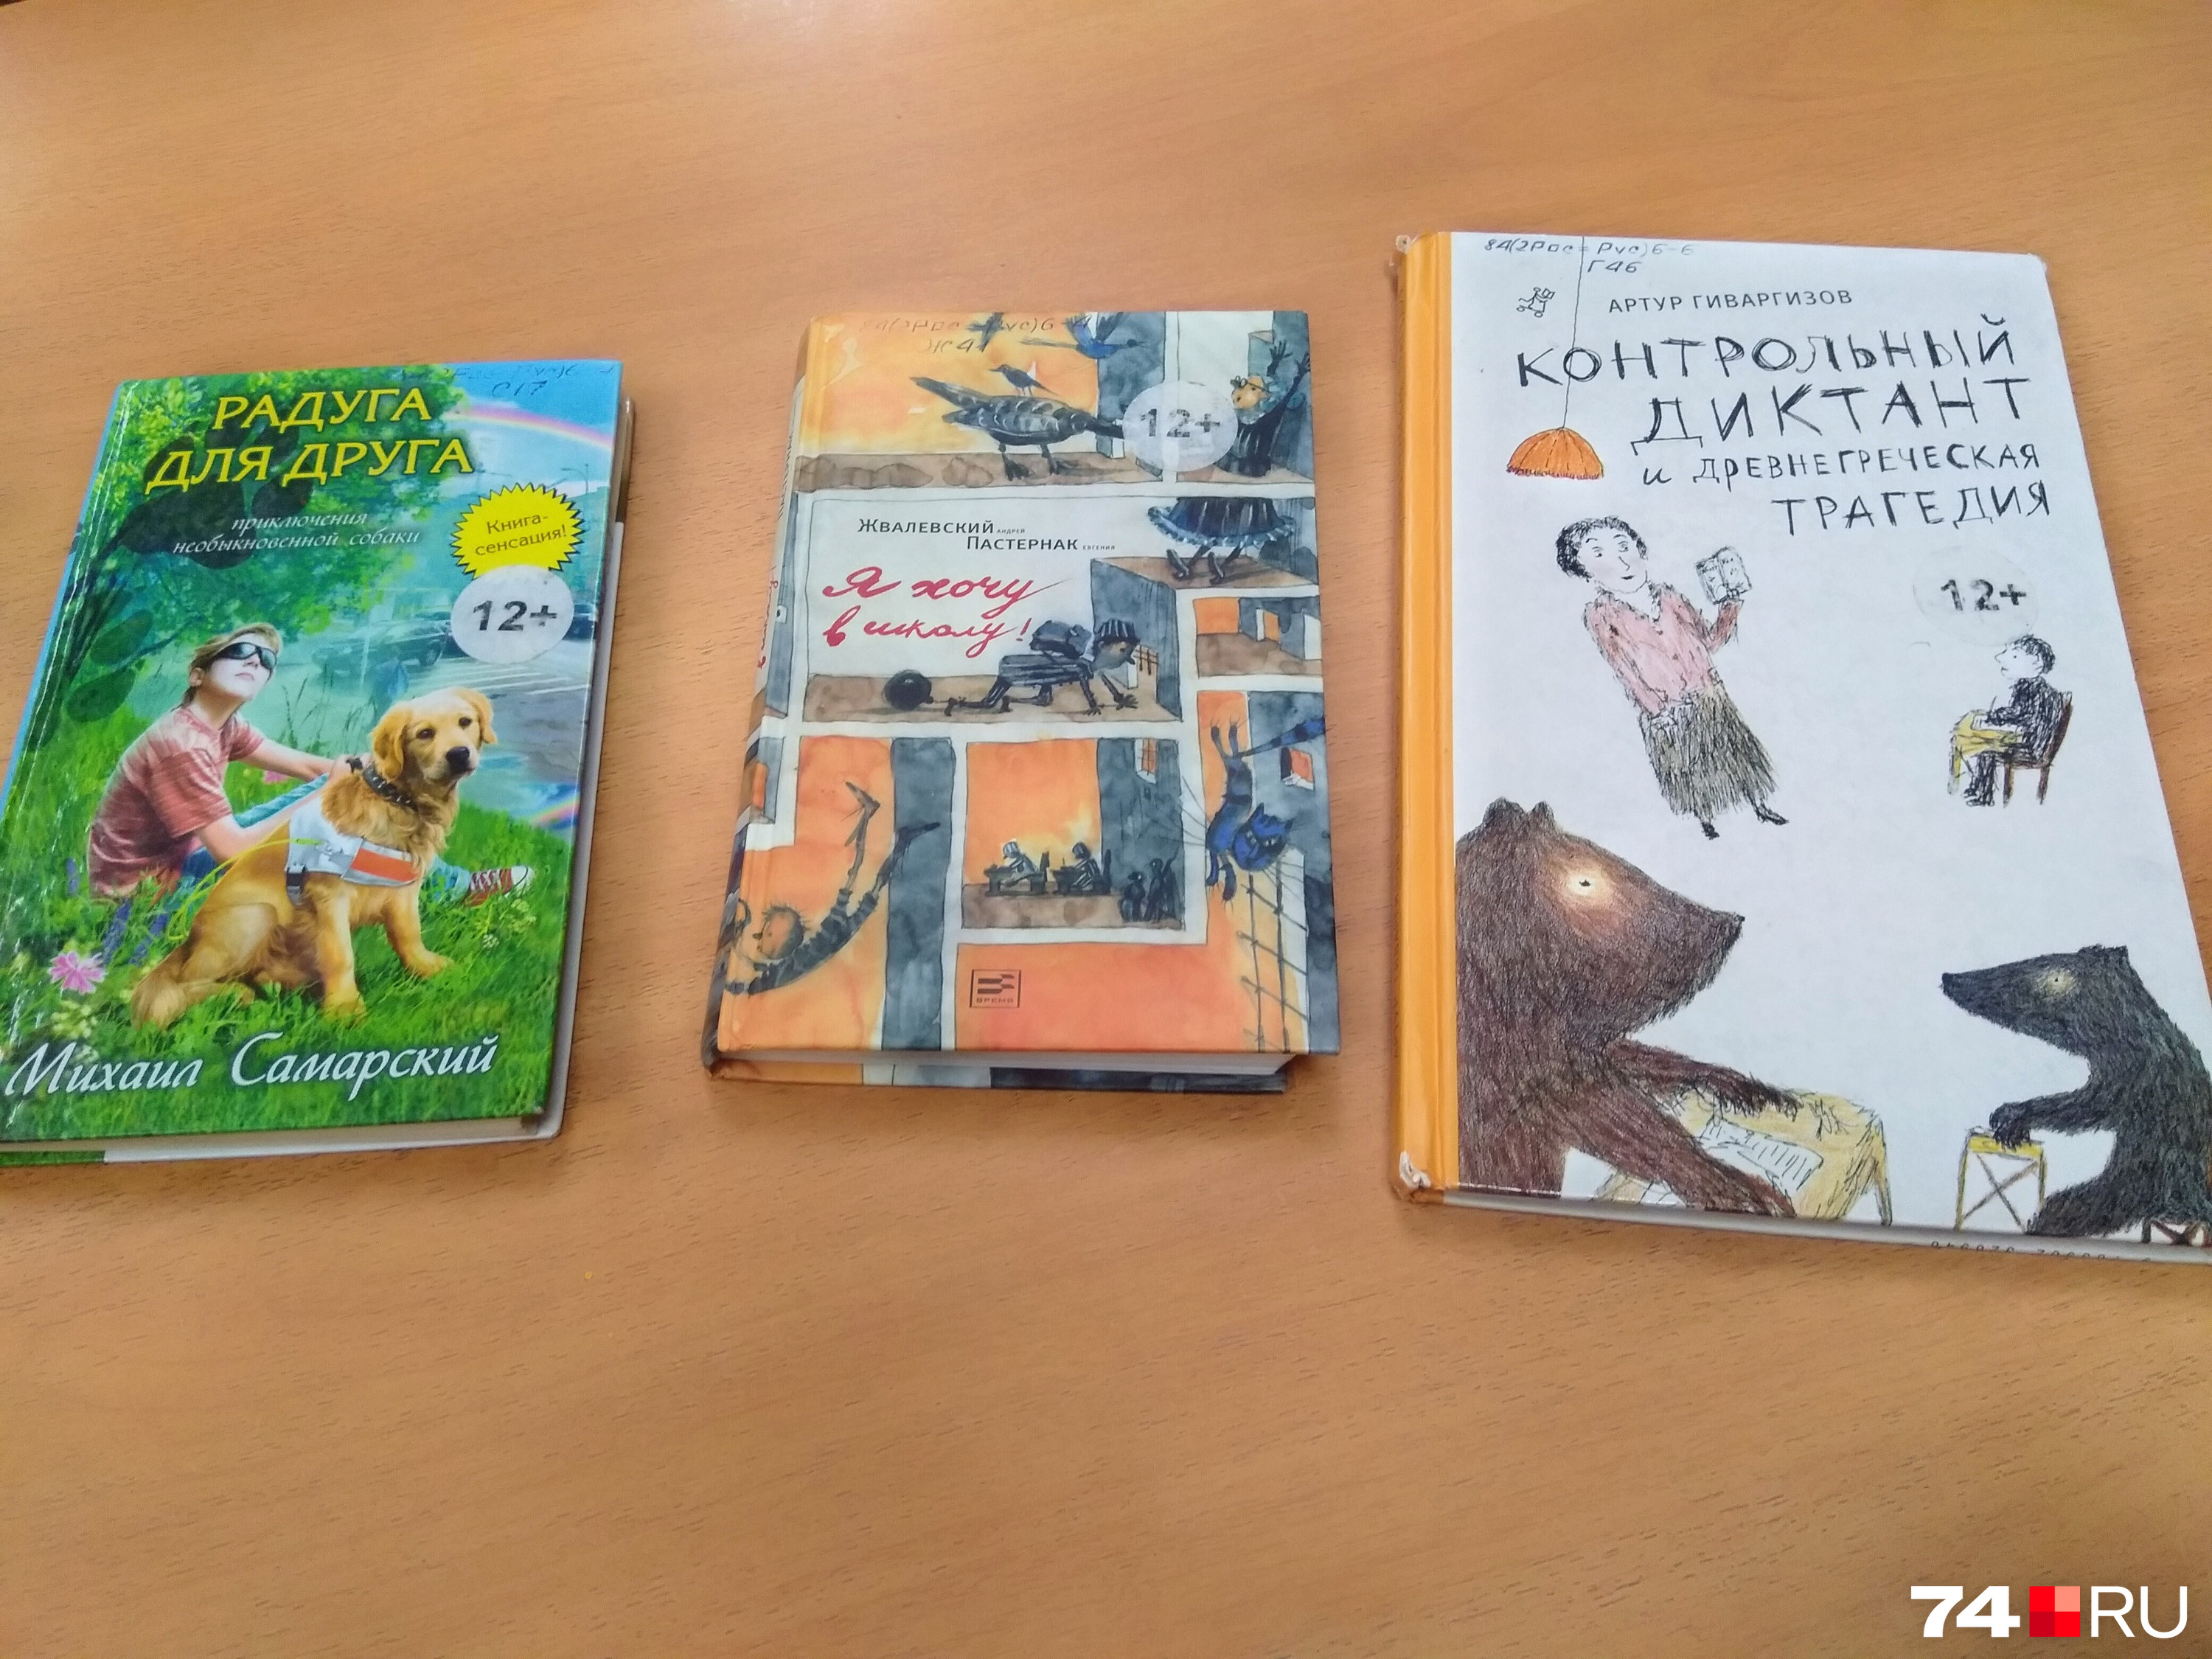 Книги современных авторов уже встречаются в списках литературы для школьников